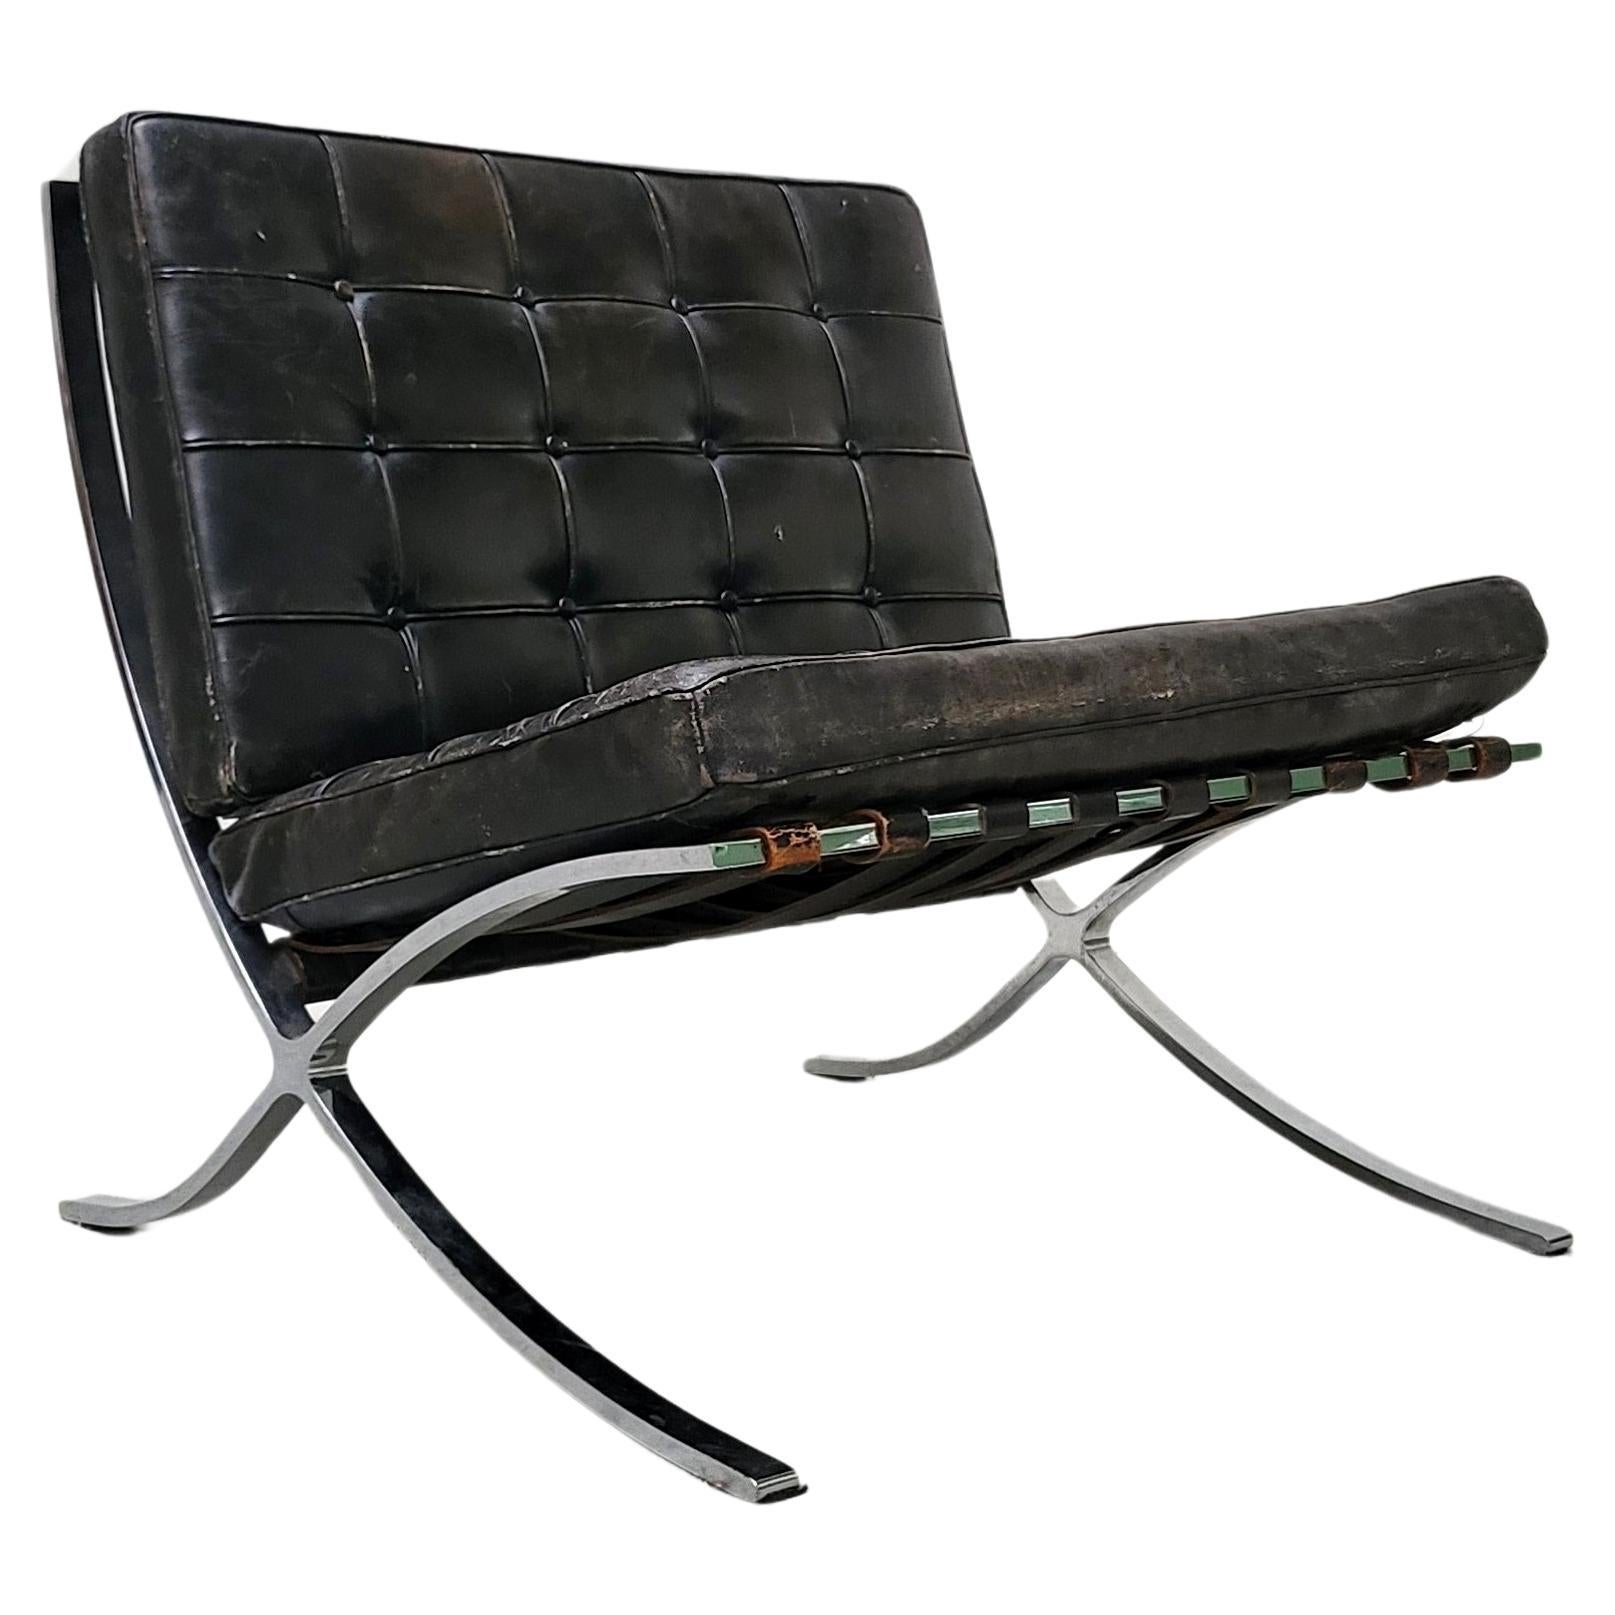 Barcelona-Stuhl im Vintage-Stil von Mies van der Rohe Knoll, 1960er Jahre